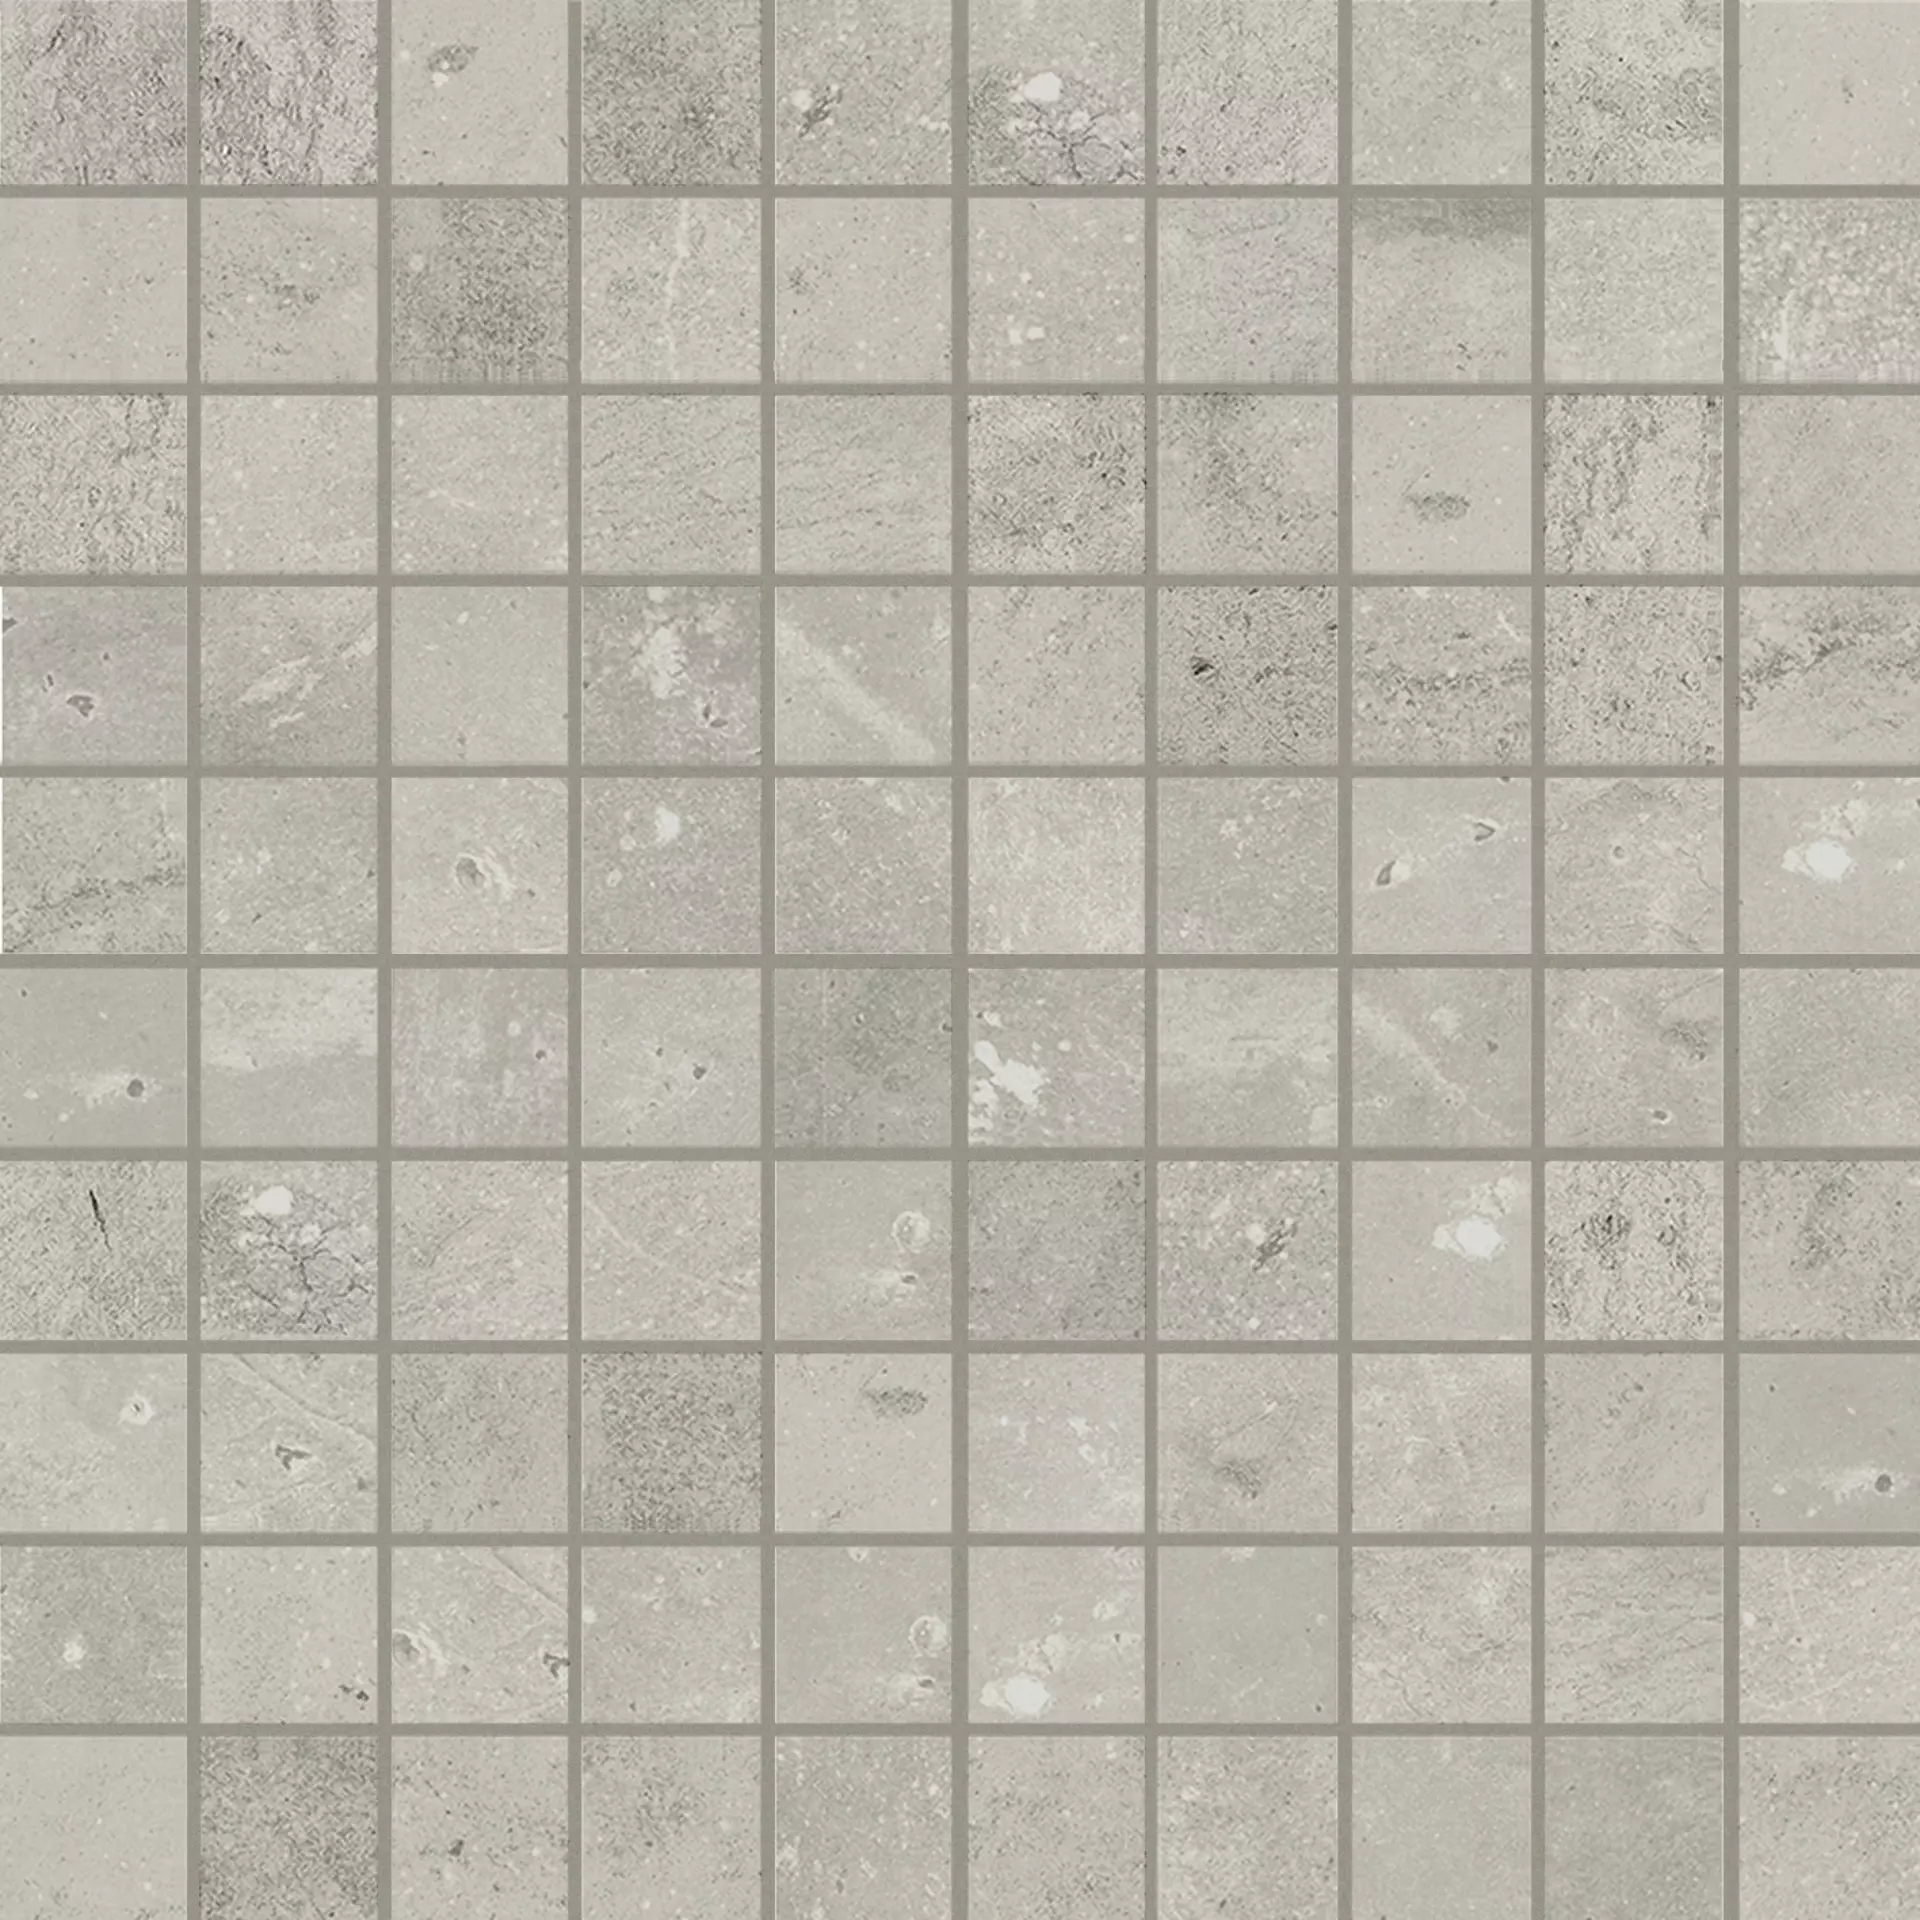 Florim Maps Of Cerim Light Grey Naturale – Matt Light Grey 747466 matt natur 3x3cm Mosaik 3x3 rektifiziert 9mm